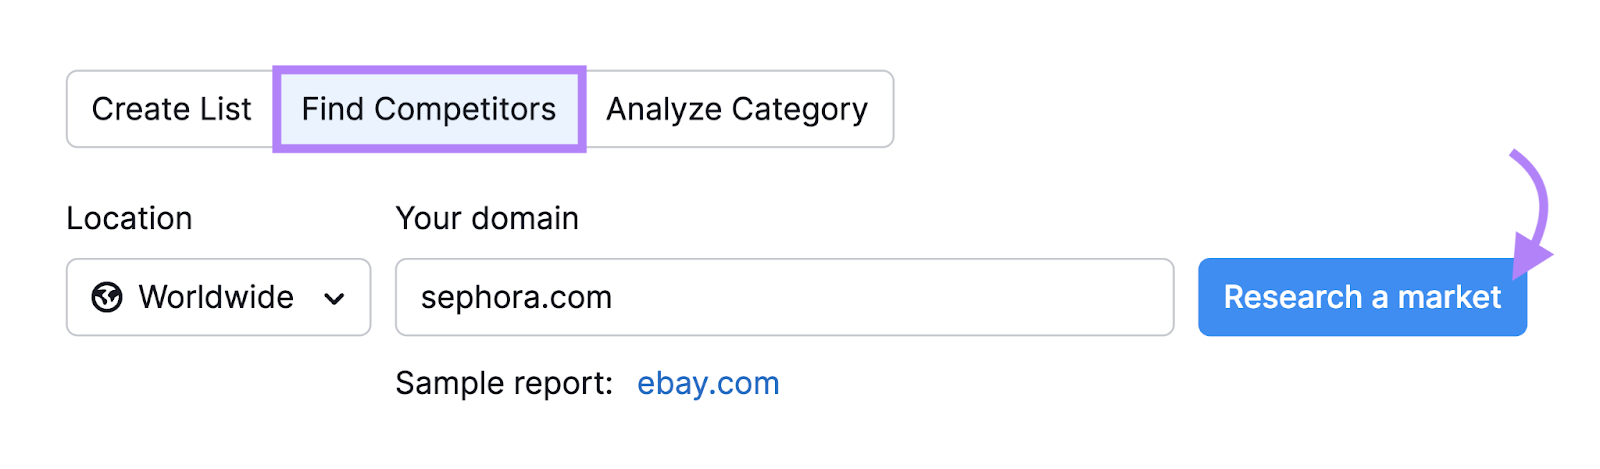 "sephora.com" entered into the Market Explorer search bar